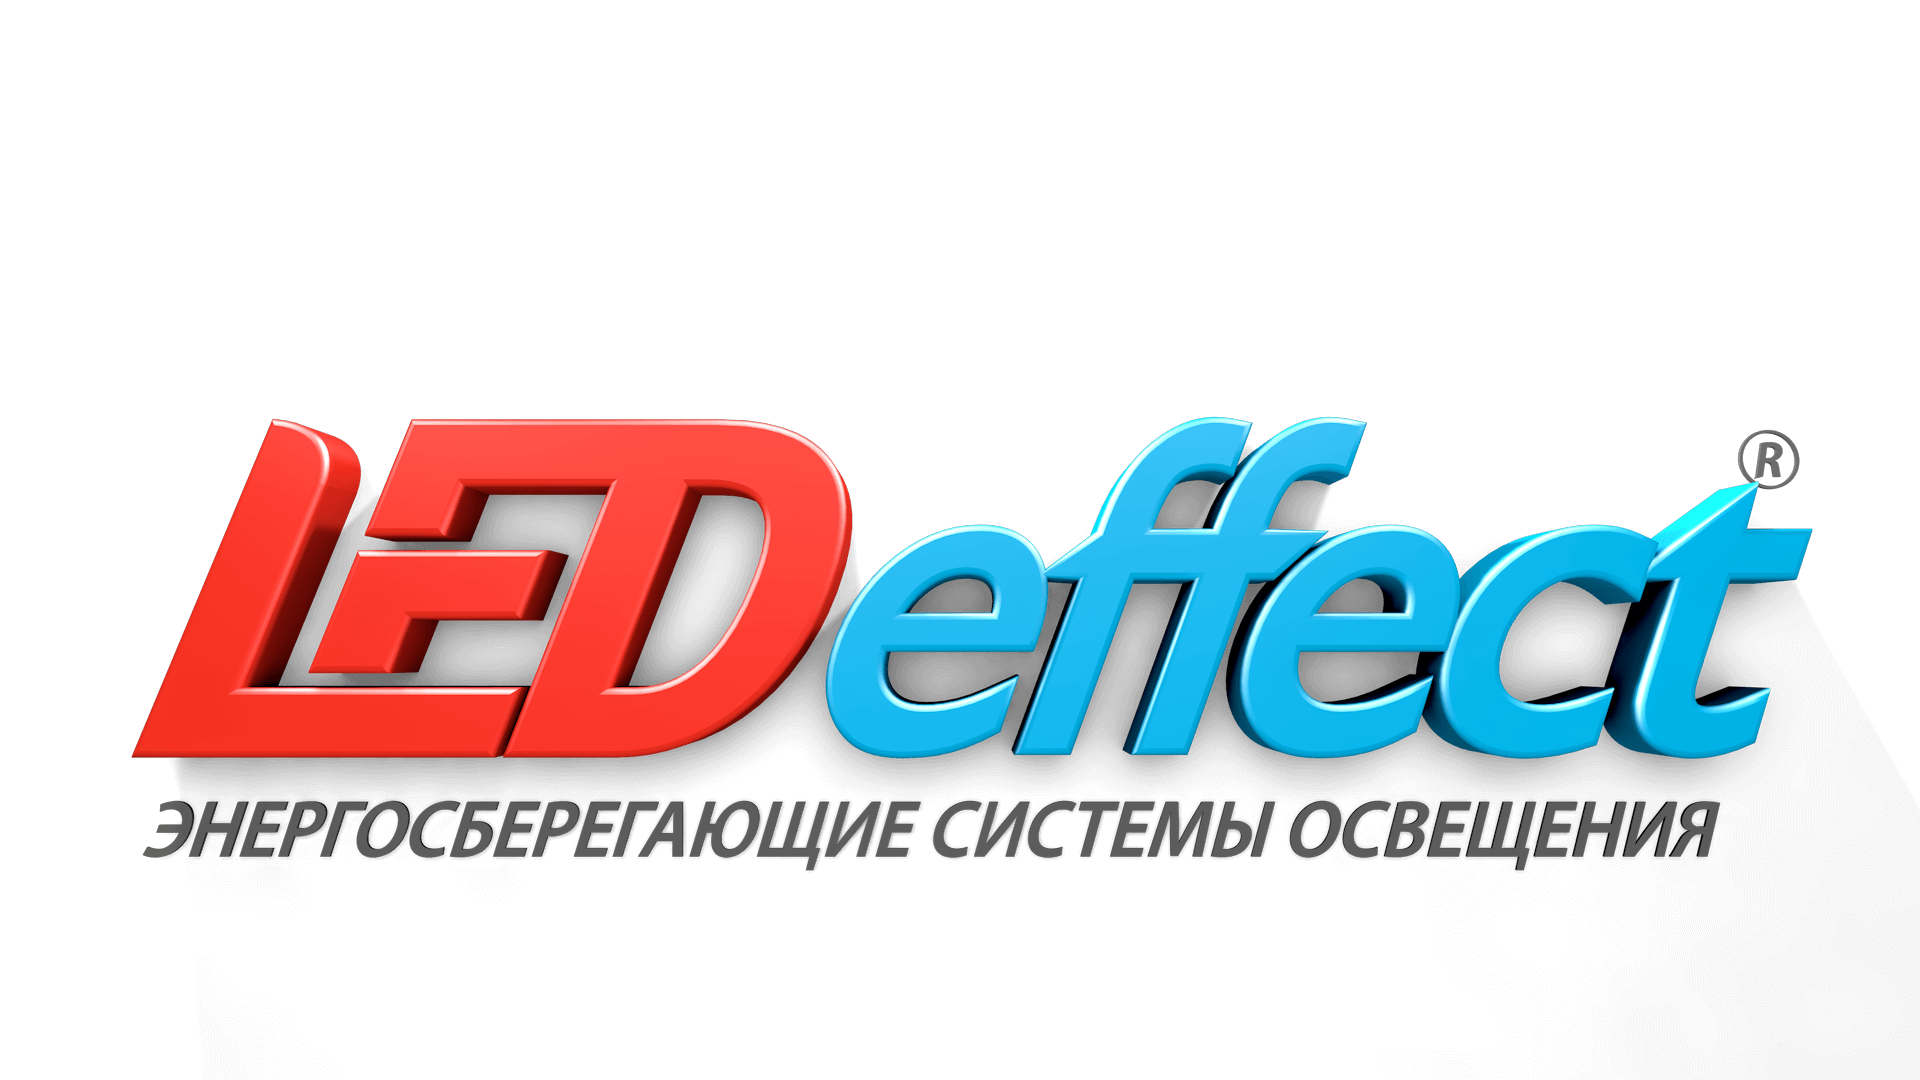 LED Effect купить в Алматы